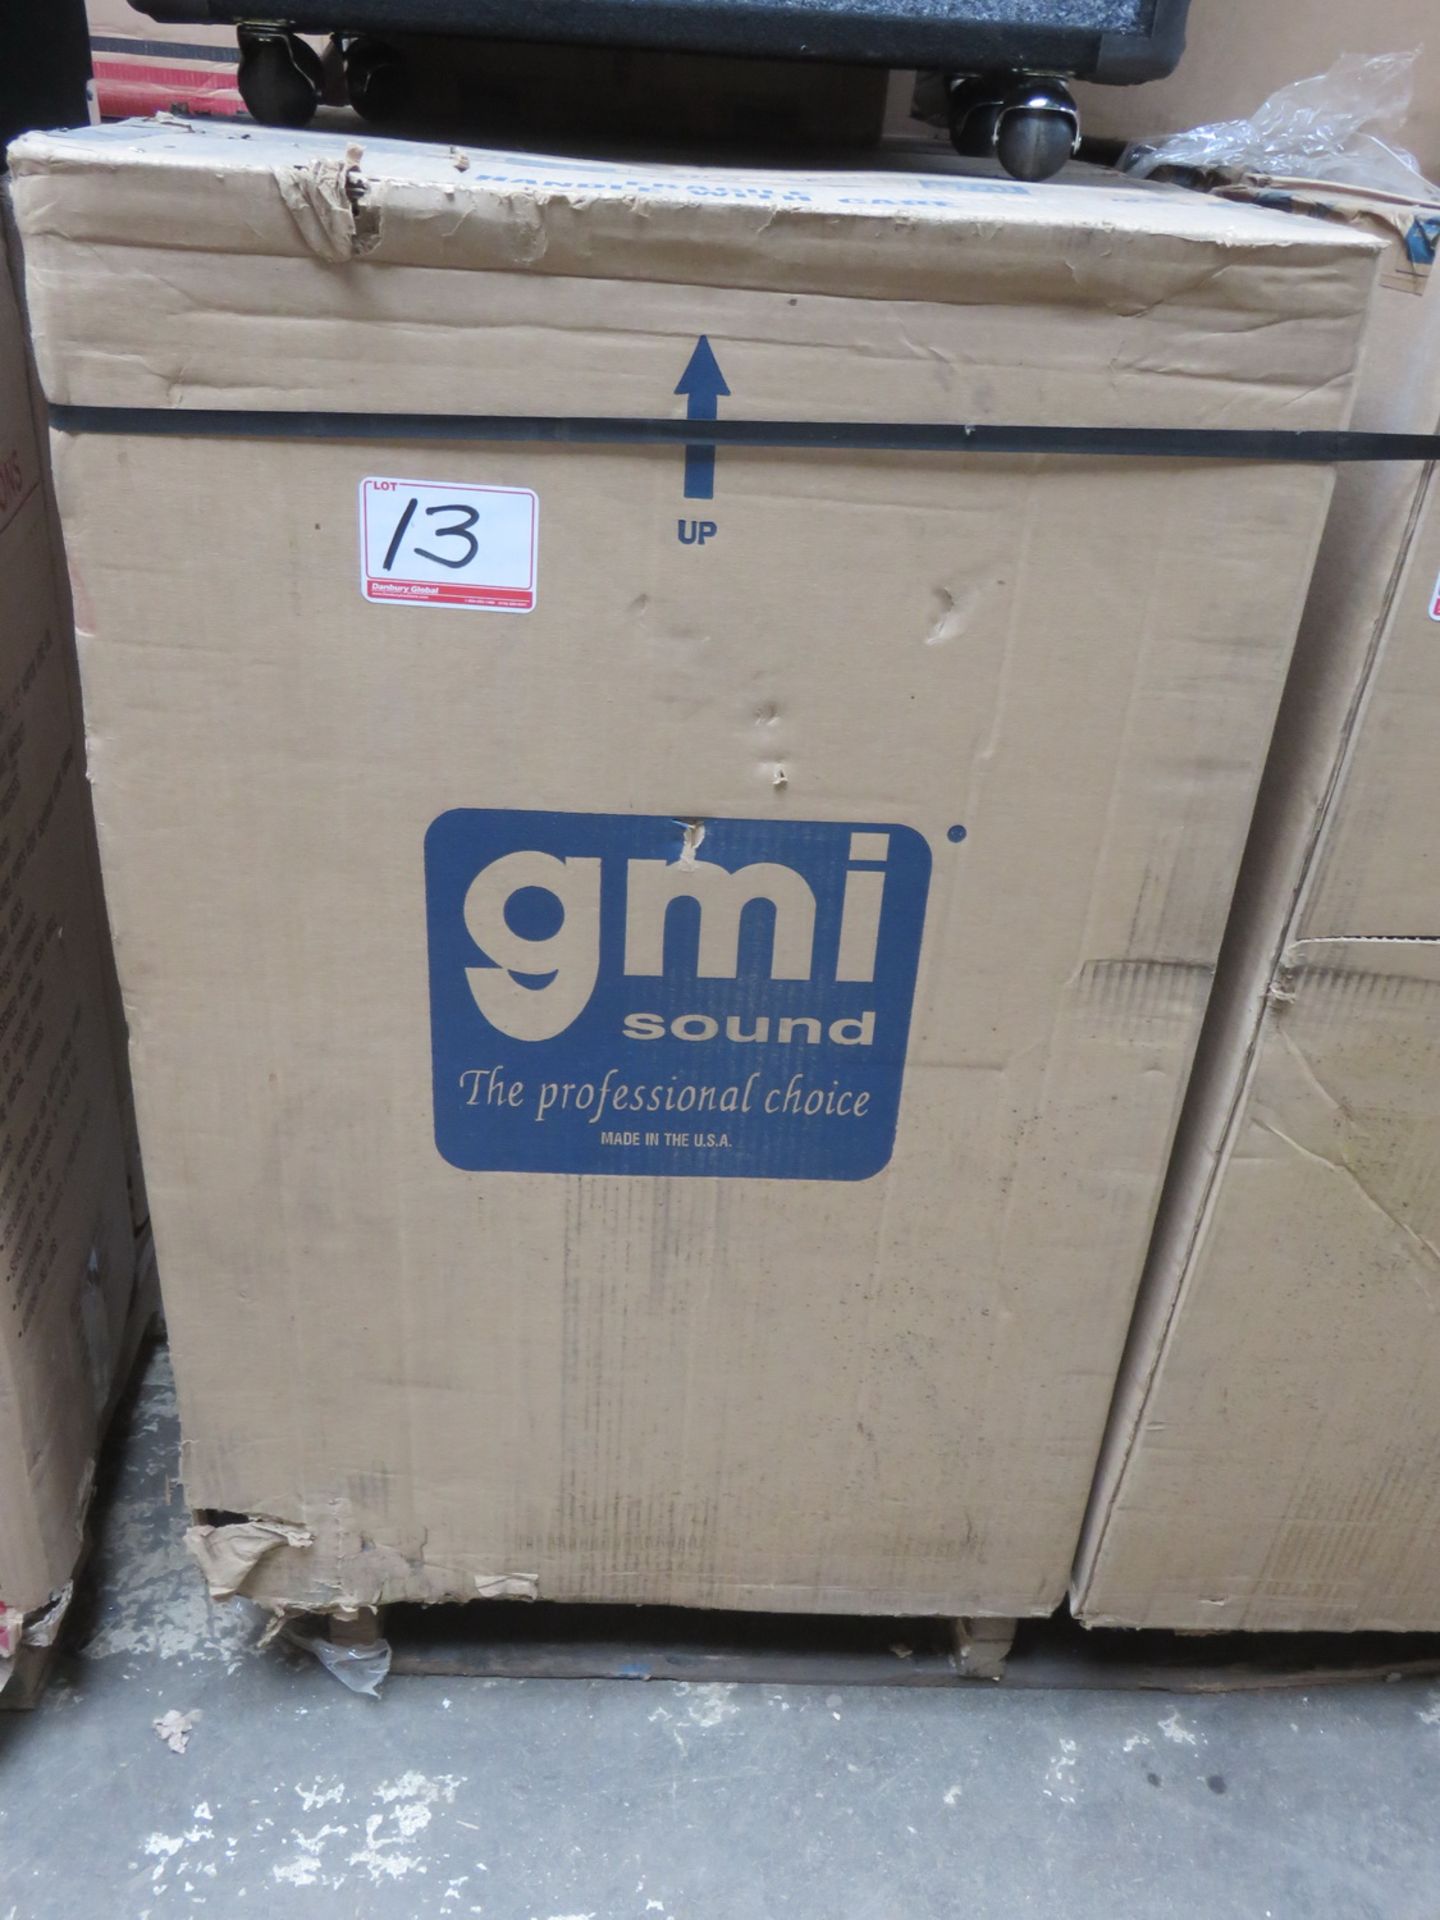 GMI SOUND MOD GMI-712 LOUD SPEAKER - (DISPLAY UNIT) - Image 2 of 2